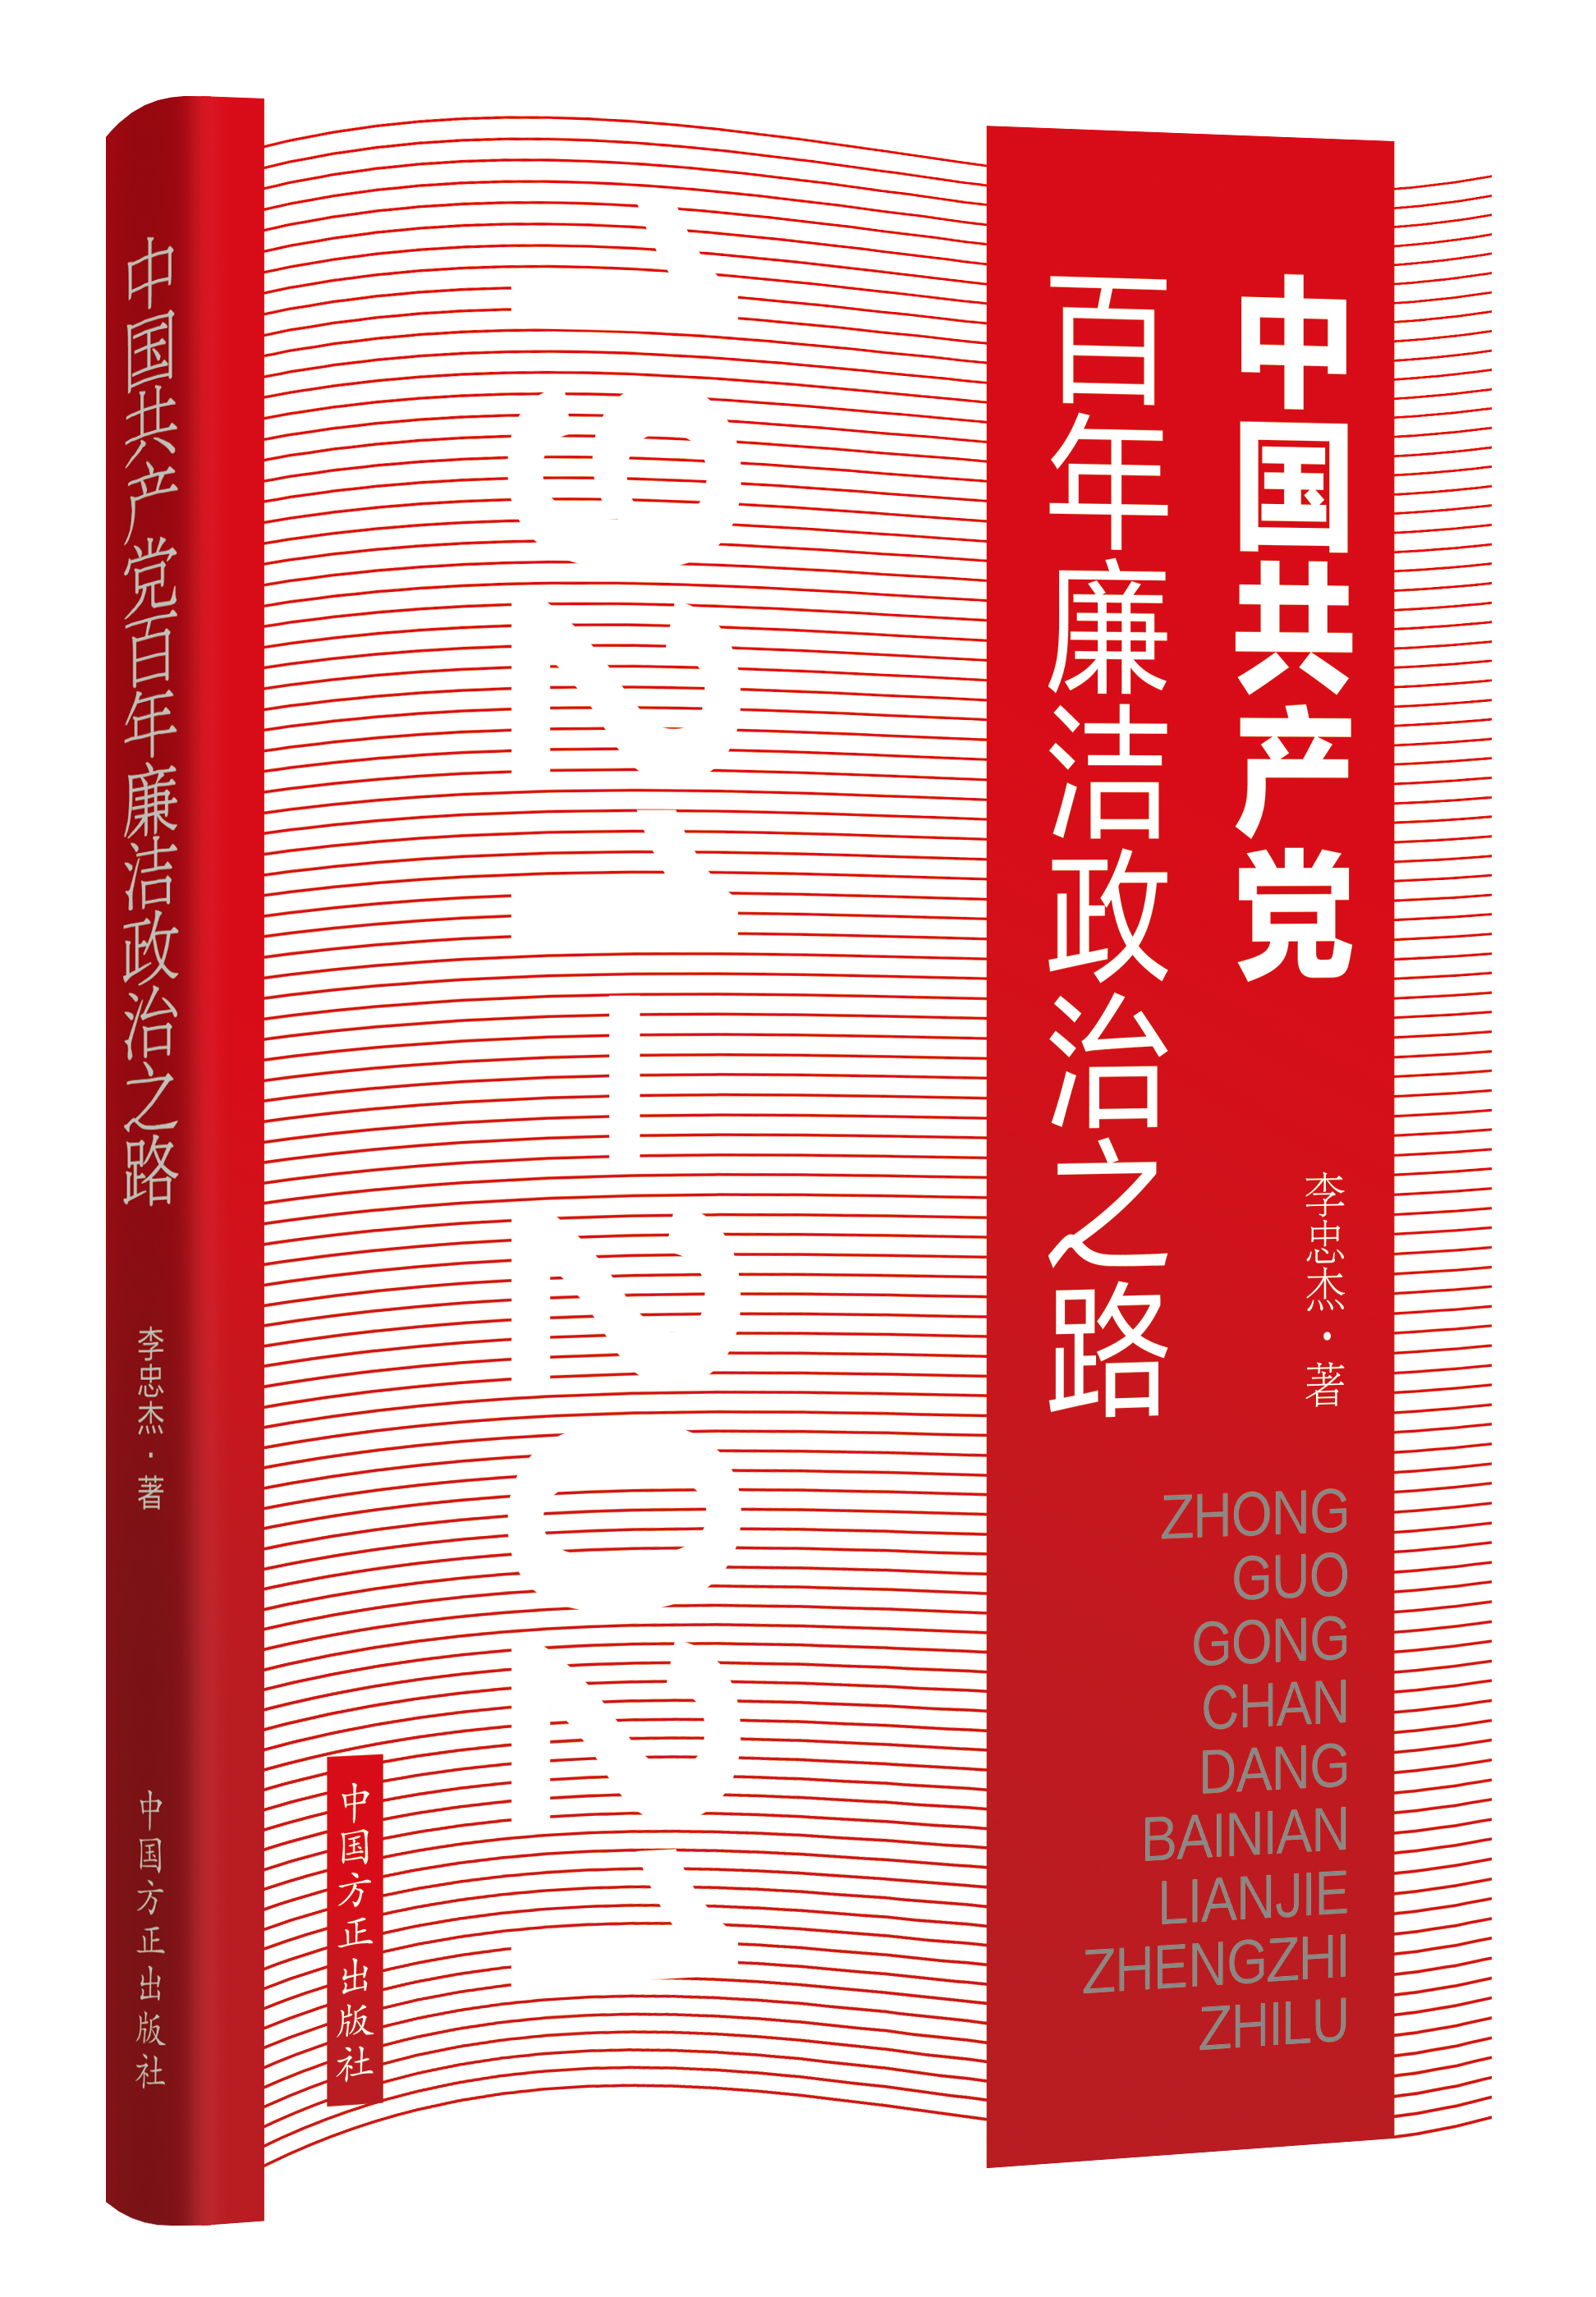 《中国共产党百年廉洁政治之路》出版发行